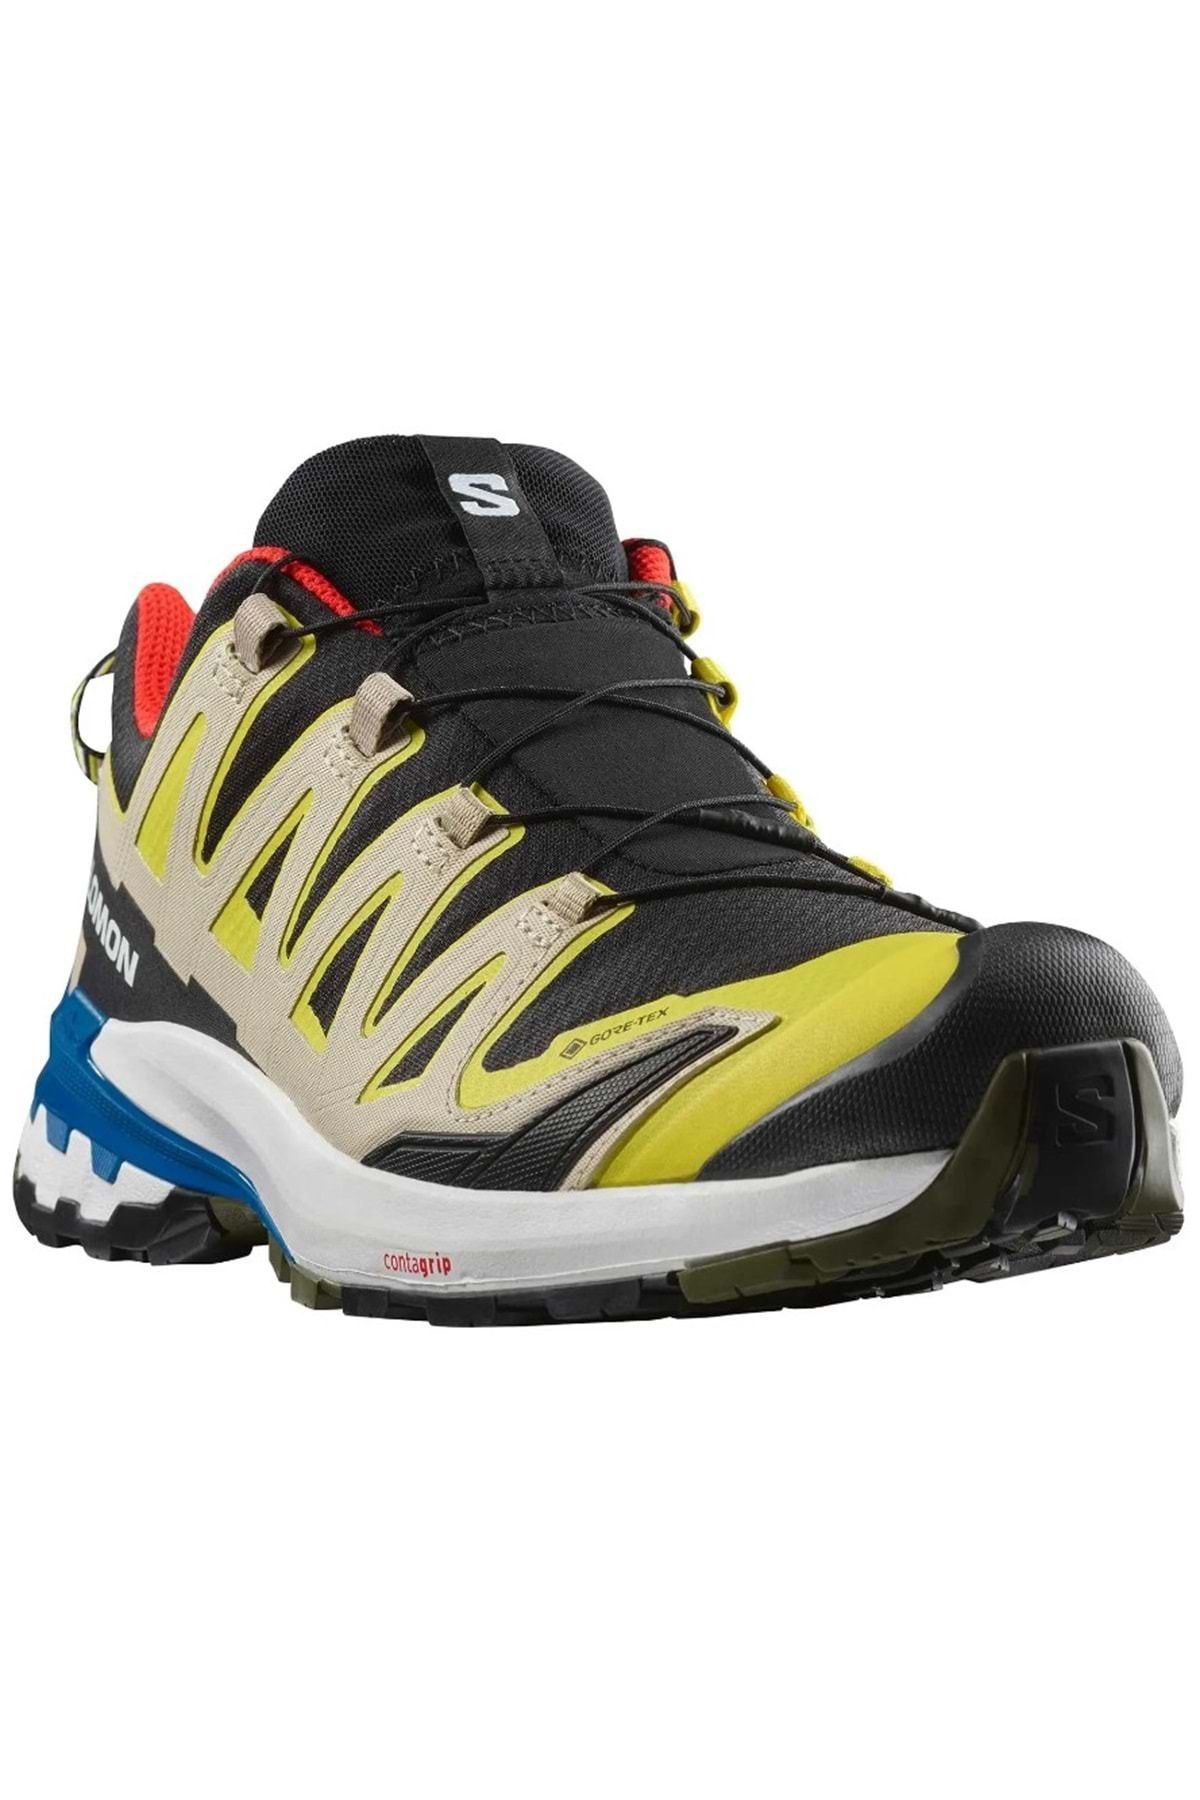 Salomon Xa Pro 3d V9 Gtx Gore-tex® L47270 Outdoor Erkek Spor Ayakkabı Sarı